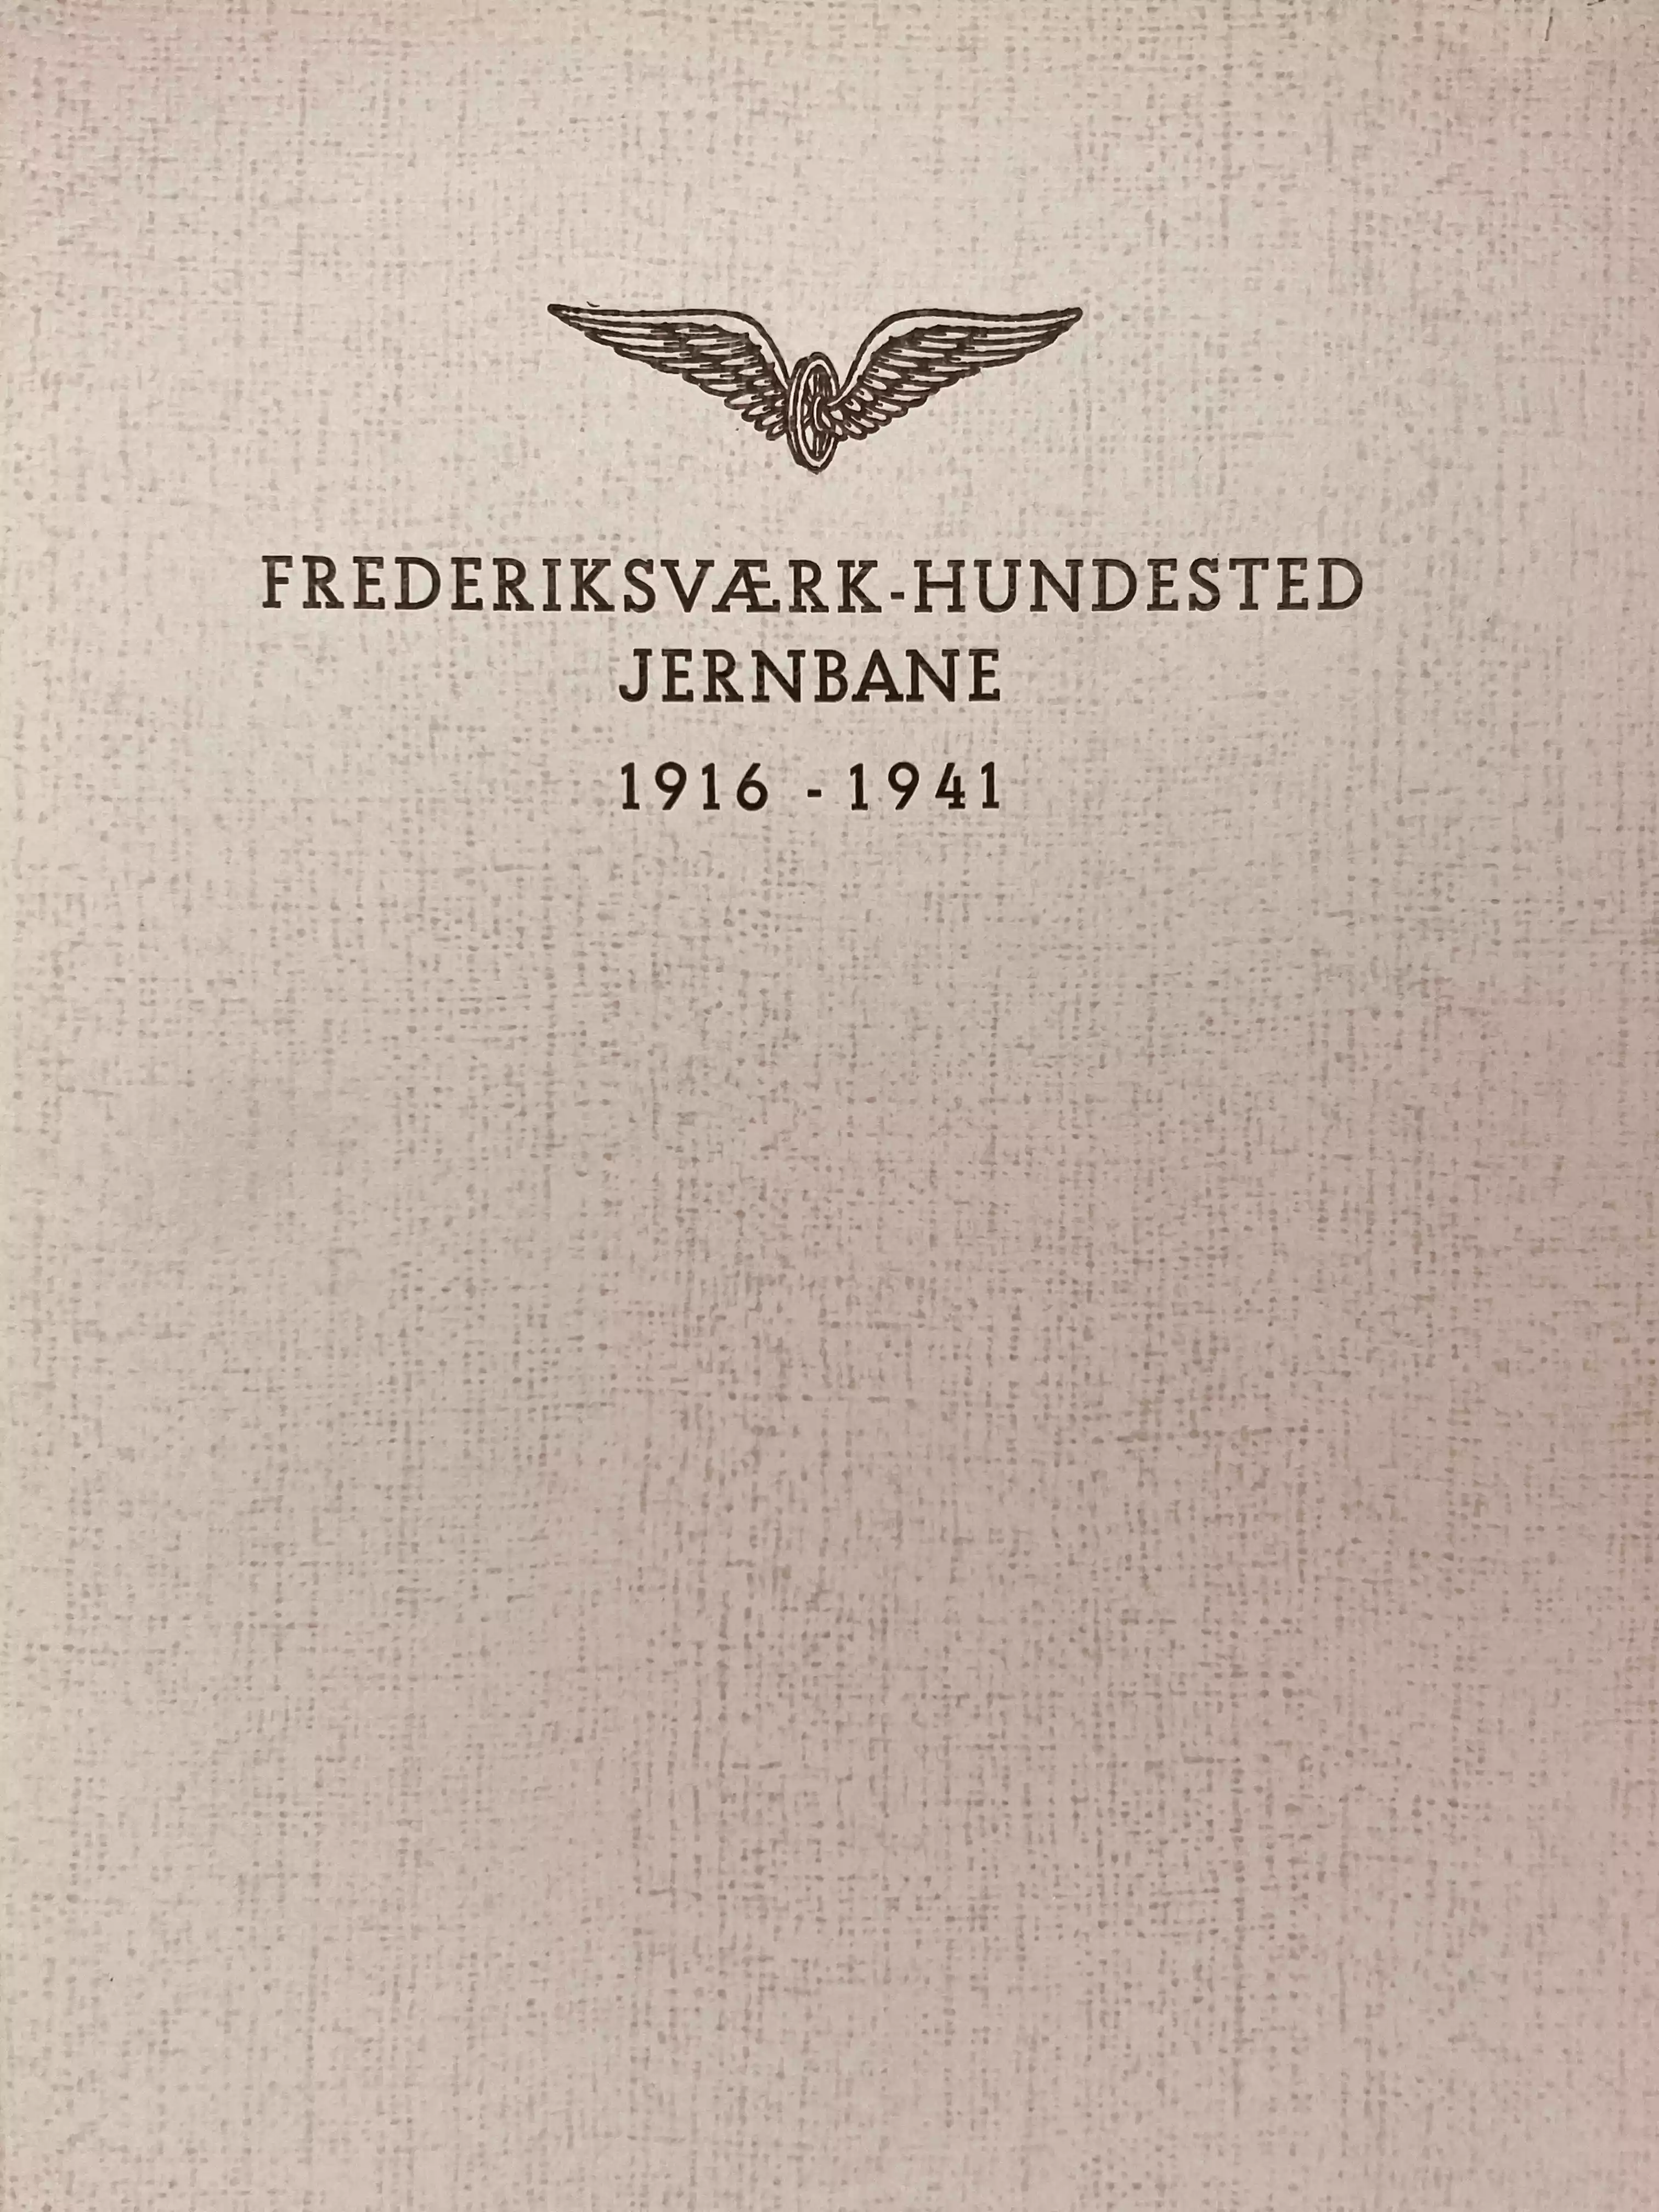 Frederiksværk-Hundested Jernbane 1916-1941